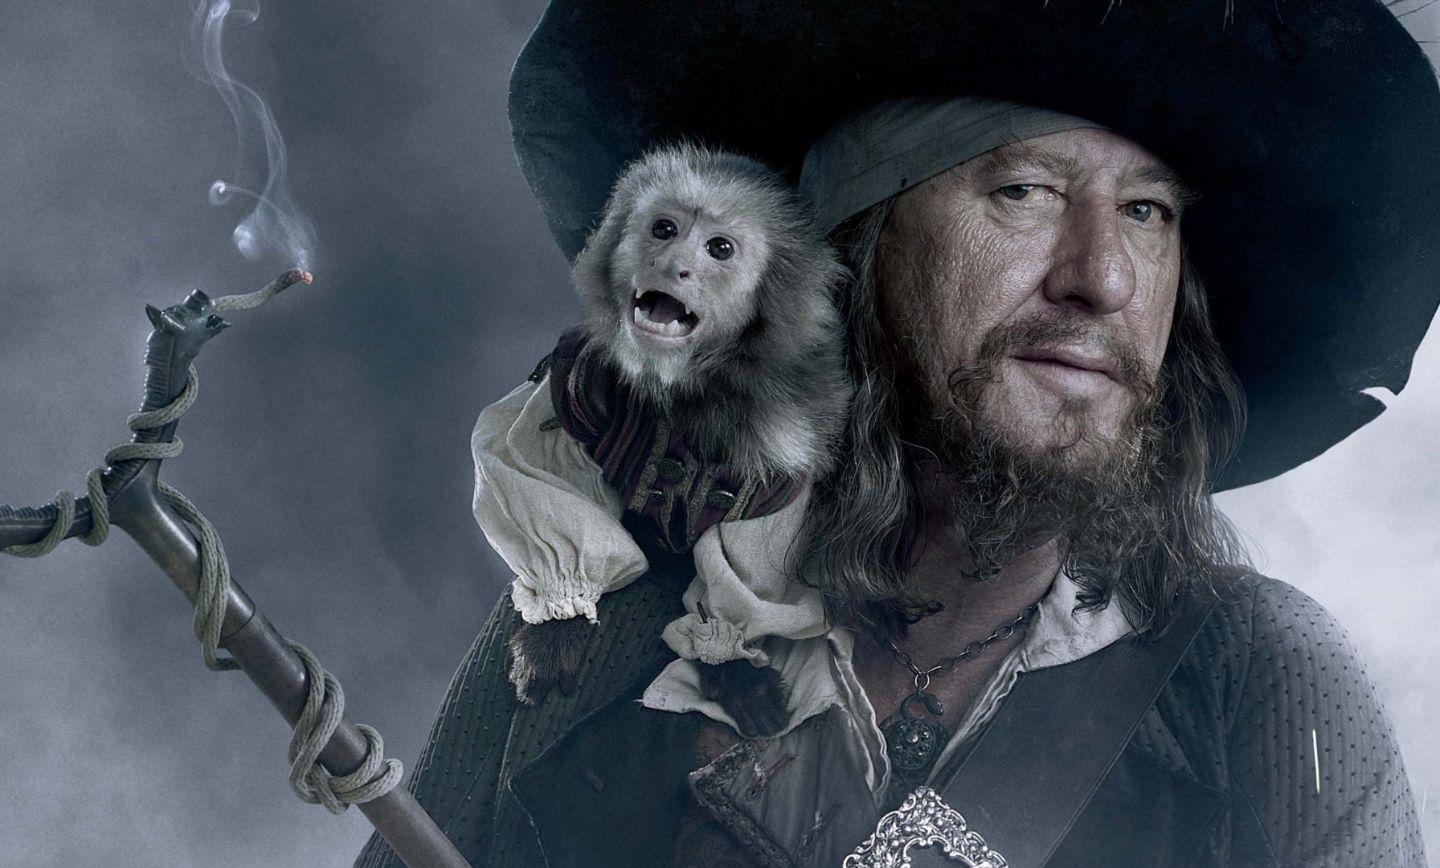 کاپیتان باربوسا در دزدان دریایی کارائیب_ در پایان جهان (Pirates of the Caribbean_ At World's End)